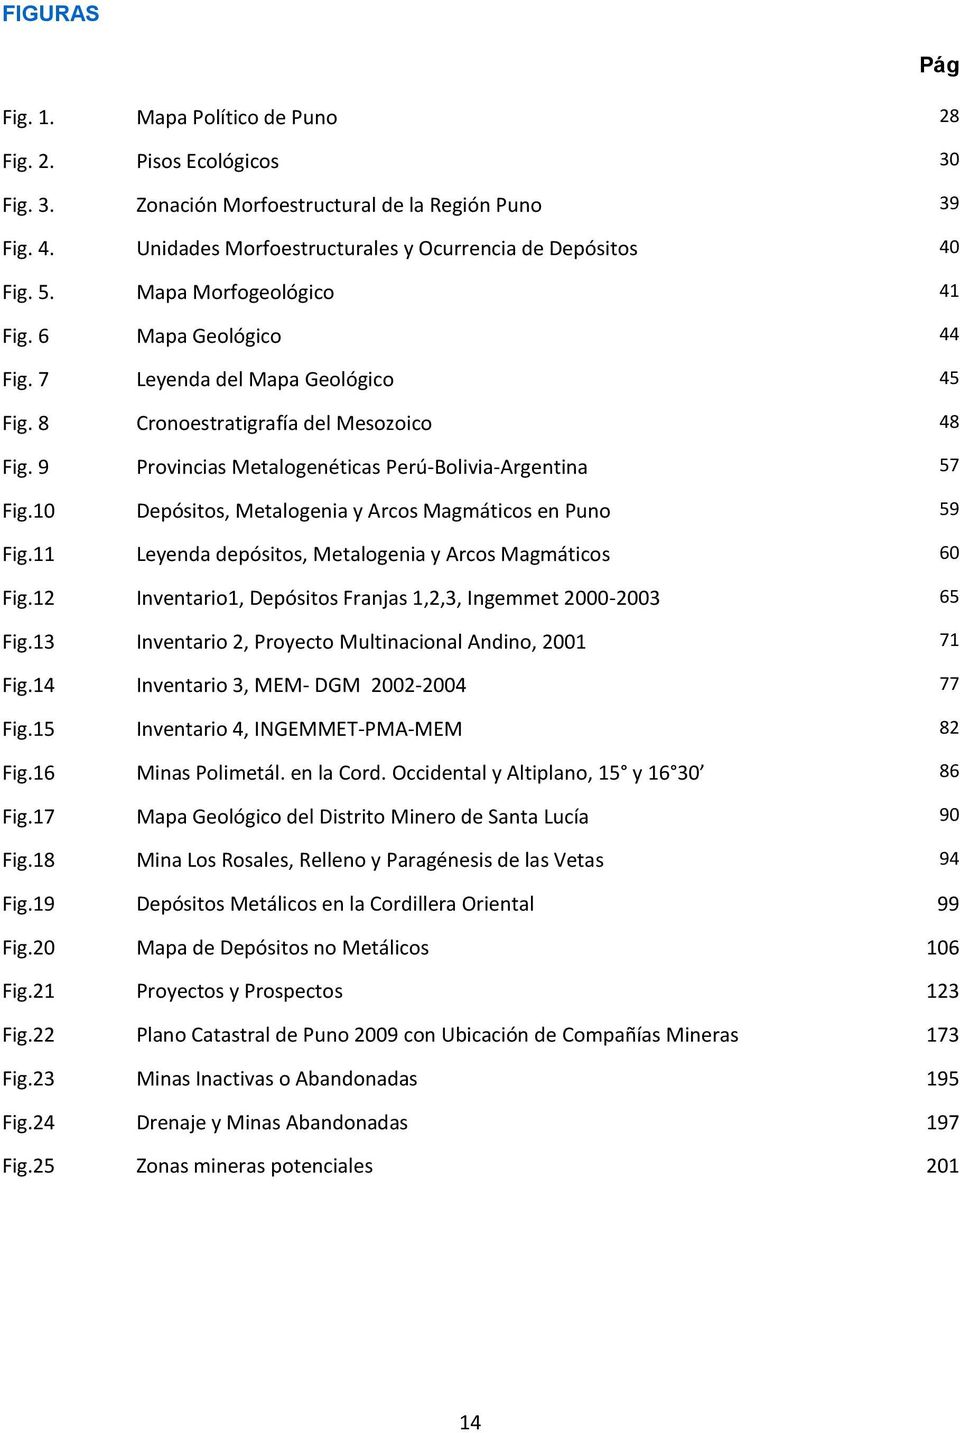 10 Depósitos, Metalogenia y Arcos Magmáticos en Puno 59 Fig.11 Leyenda depósitos, Metalogenia y Arcos Magmáticos 60 Fig.12 Inventario1, Depósitos Franjas 1,2,3, Ingemmet 2000-2003 65 Fig.